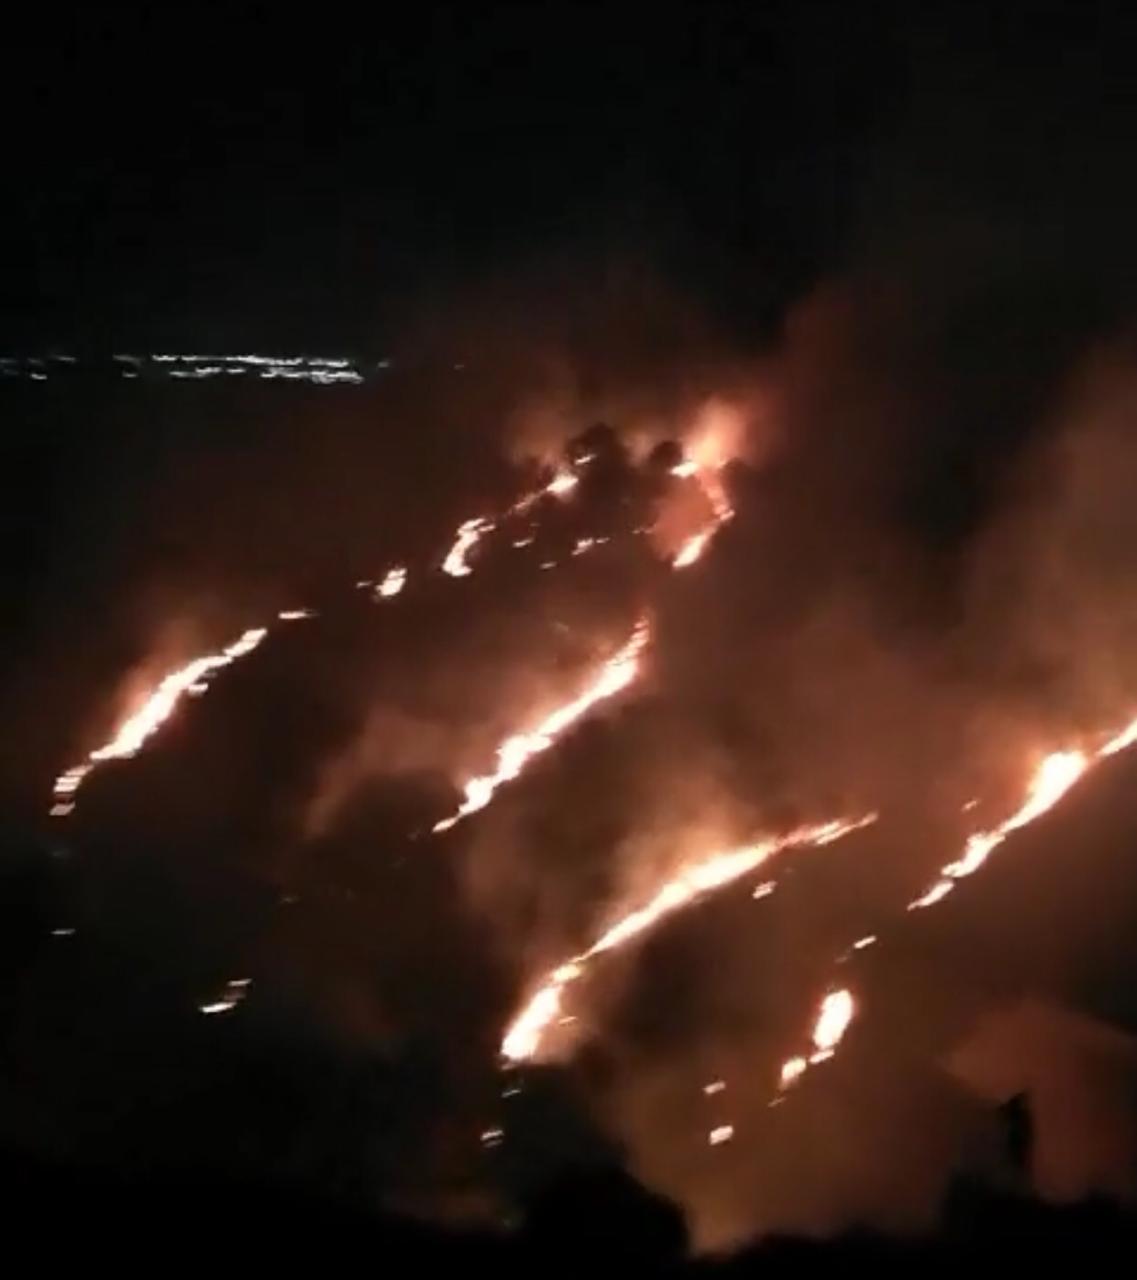 بالصور .. اربد : حريق كبير يلتهم مساحات واسعة من احراش منطقة فوعرا